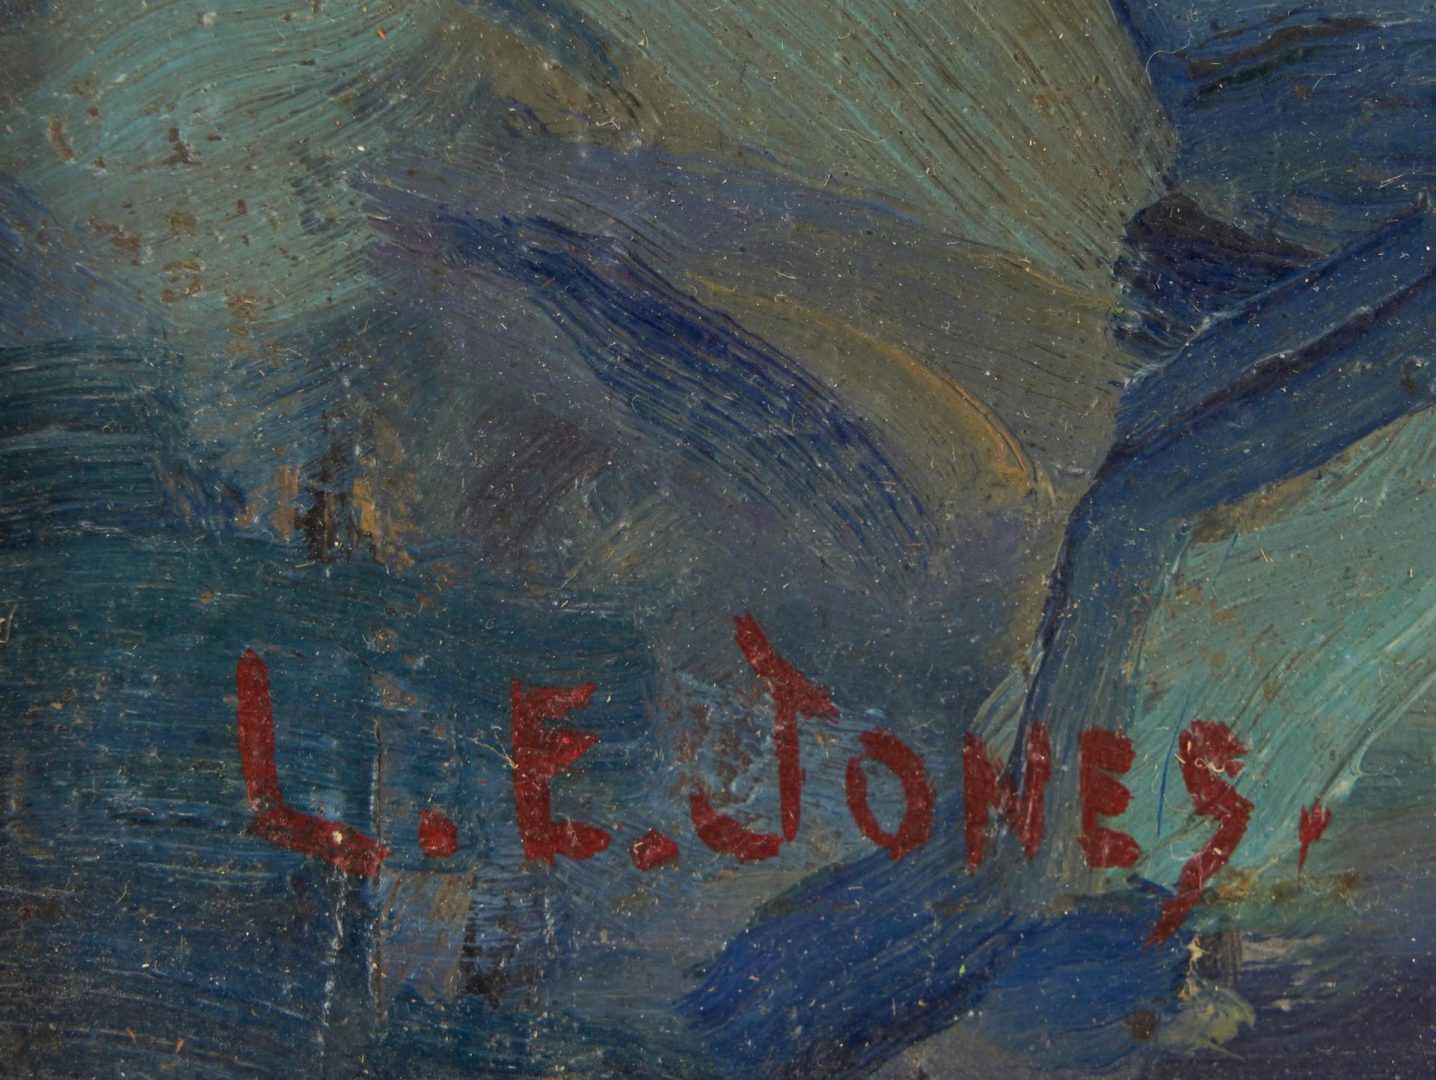 Lot 225: Louis E. Jones Oil Painting, Smoky Mtn. Landscape